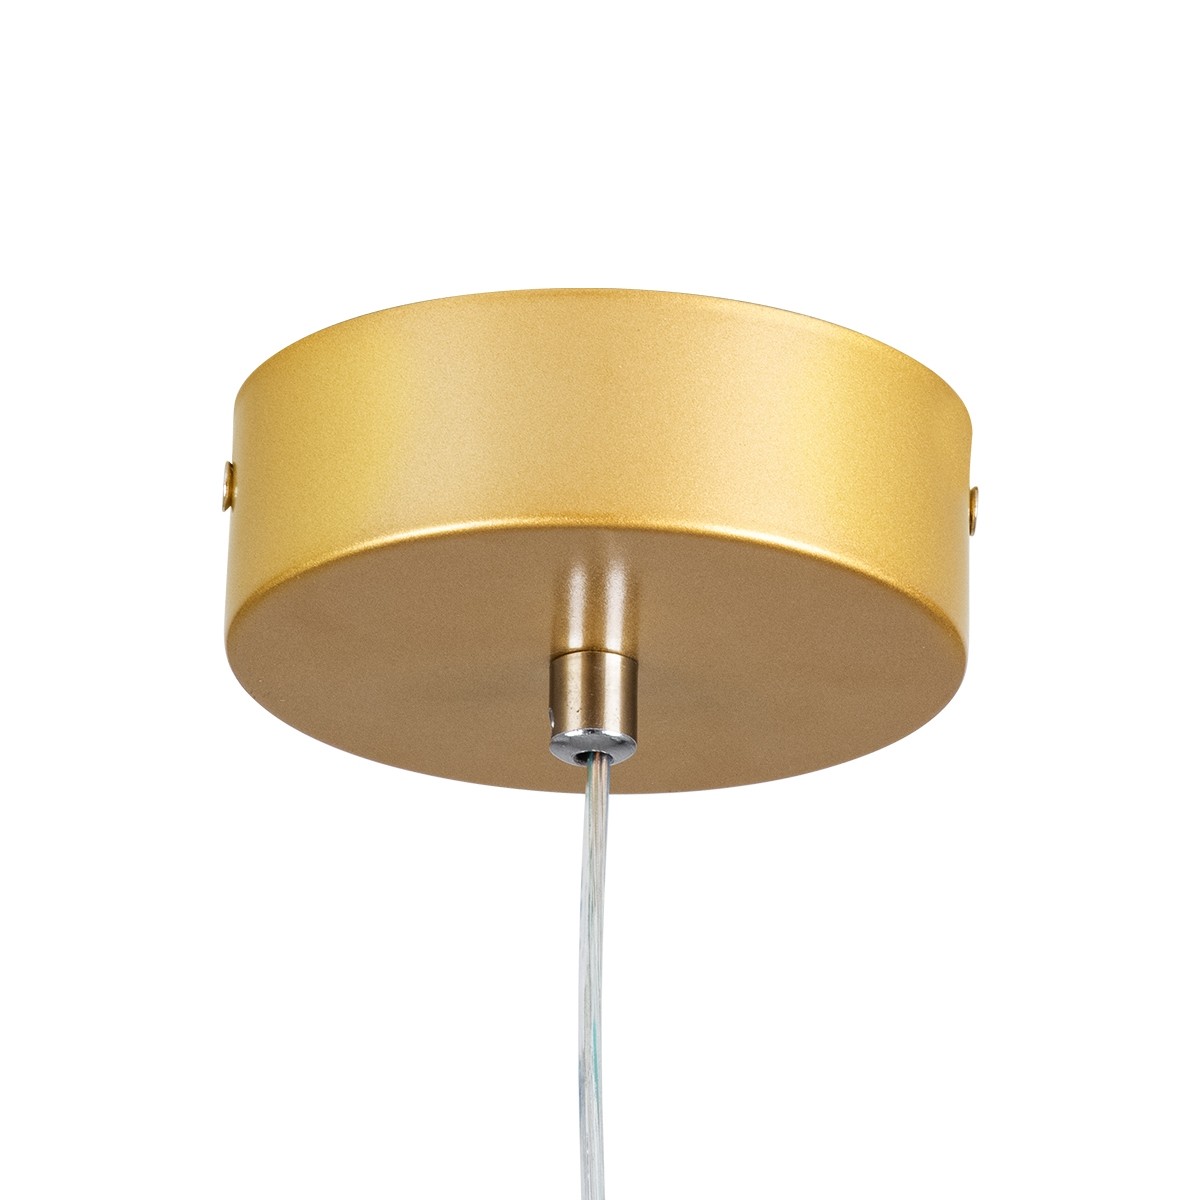 LED Κρεμαστό Φωτιστικό Οροφής Χρυσό Design ROSE 22W Εναλλαγή Φωτισμού μέσω Διακόπτη On/Off Μ24 x Π22 x Υ24cm 61066